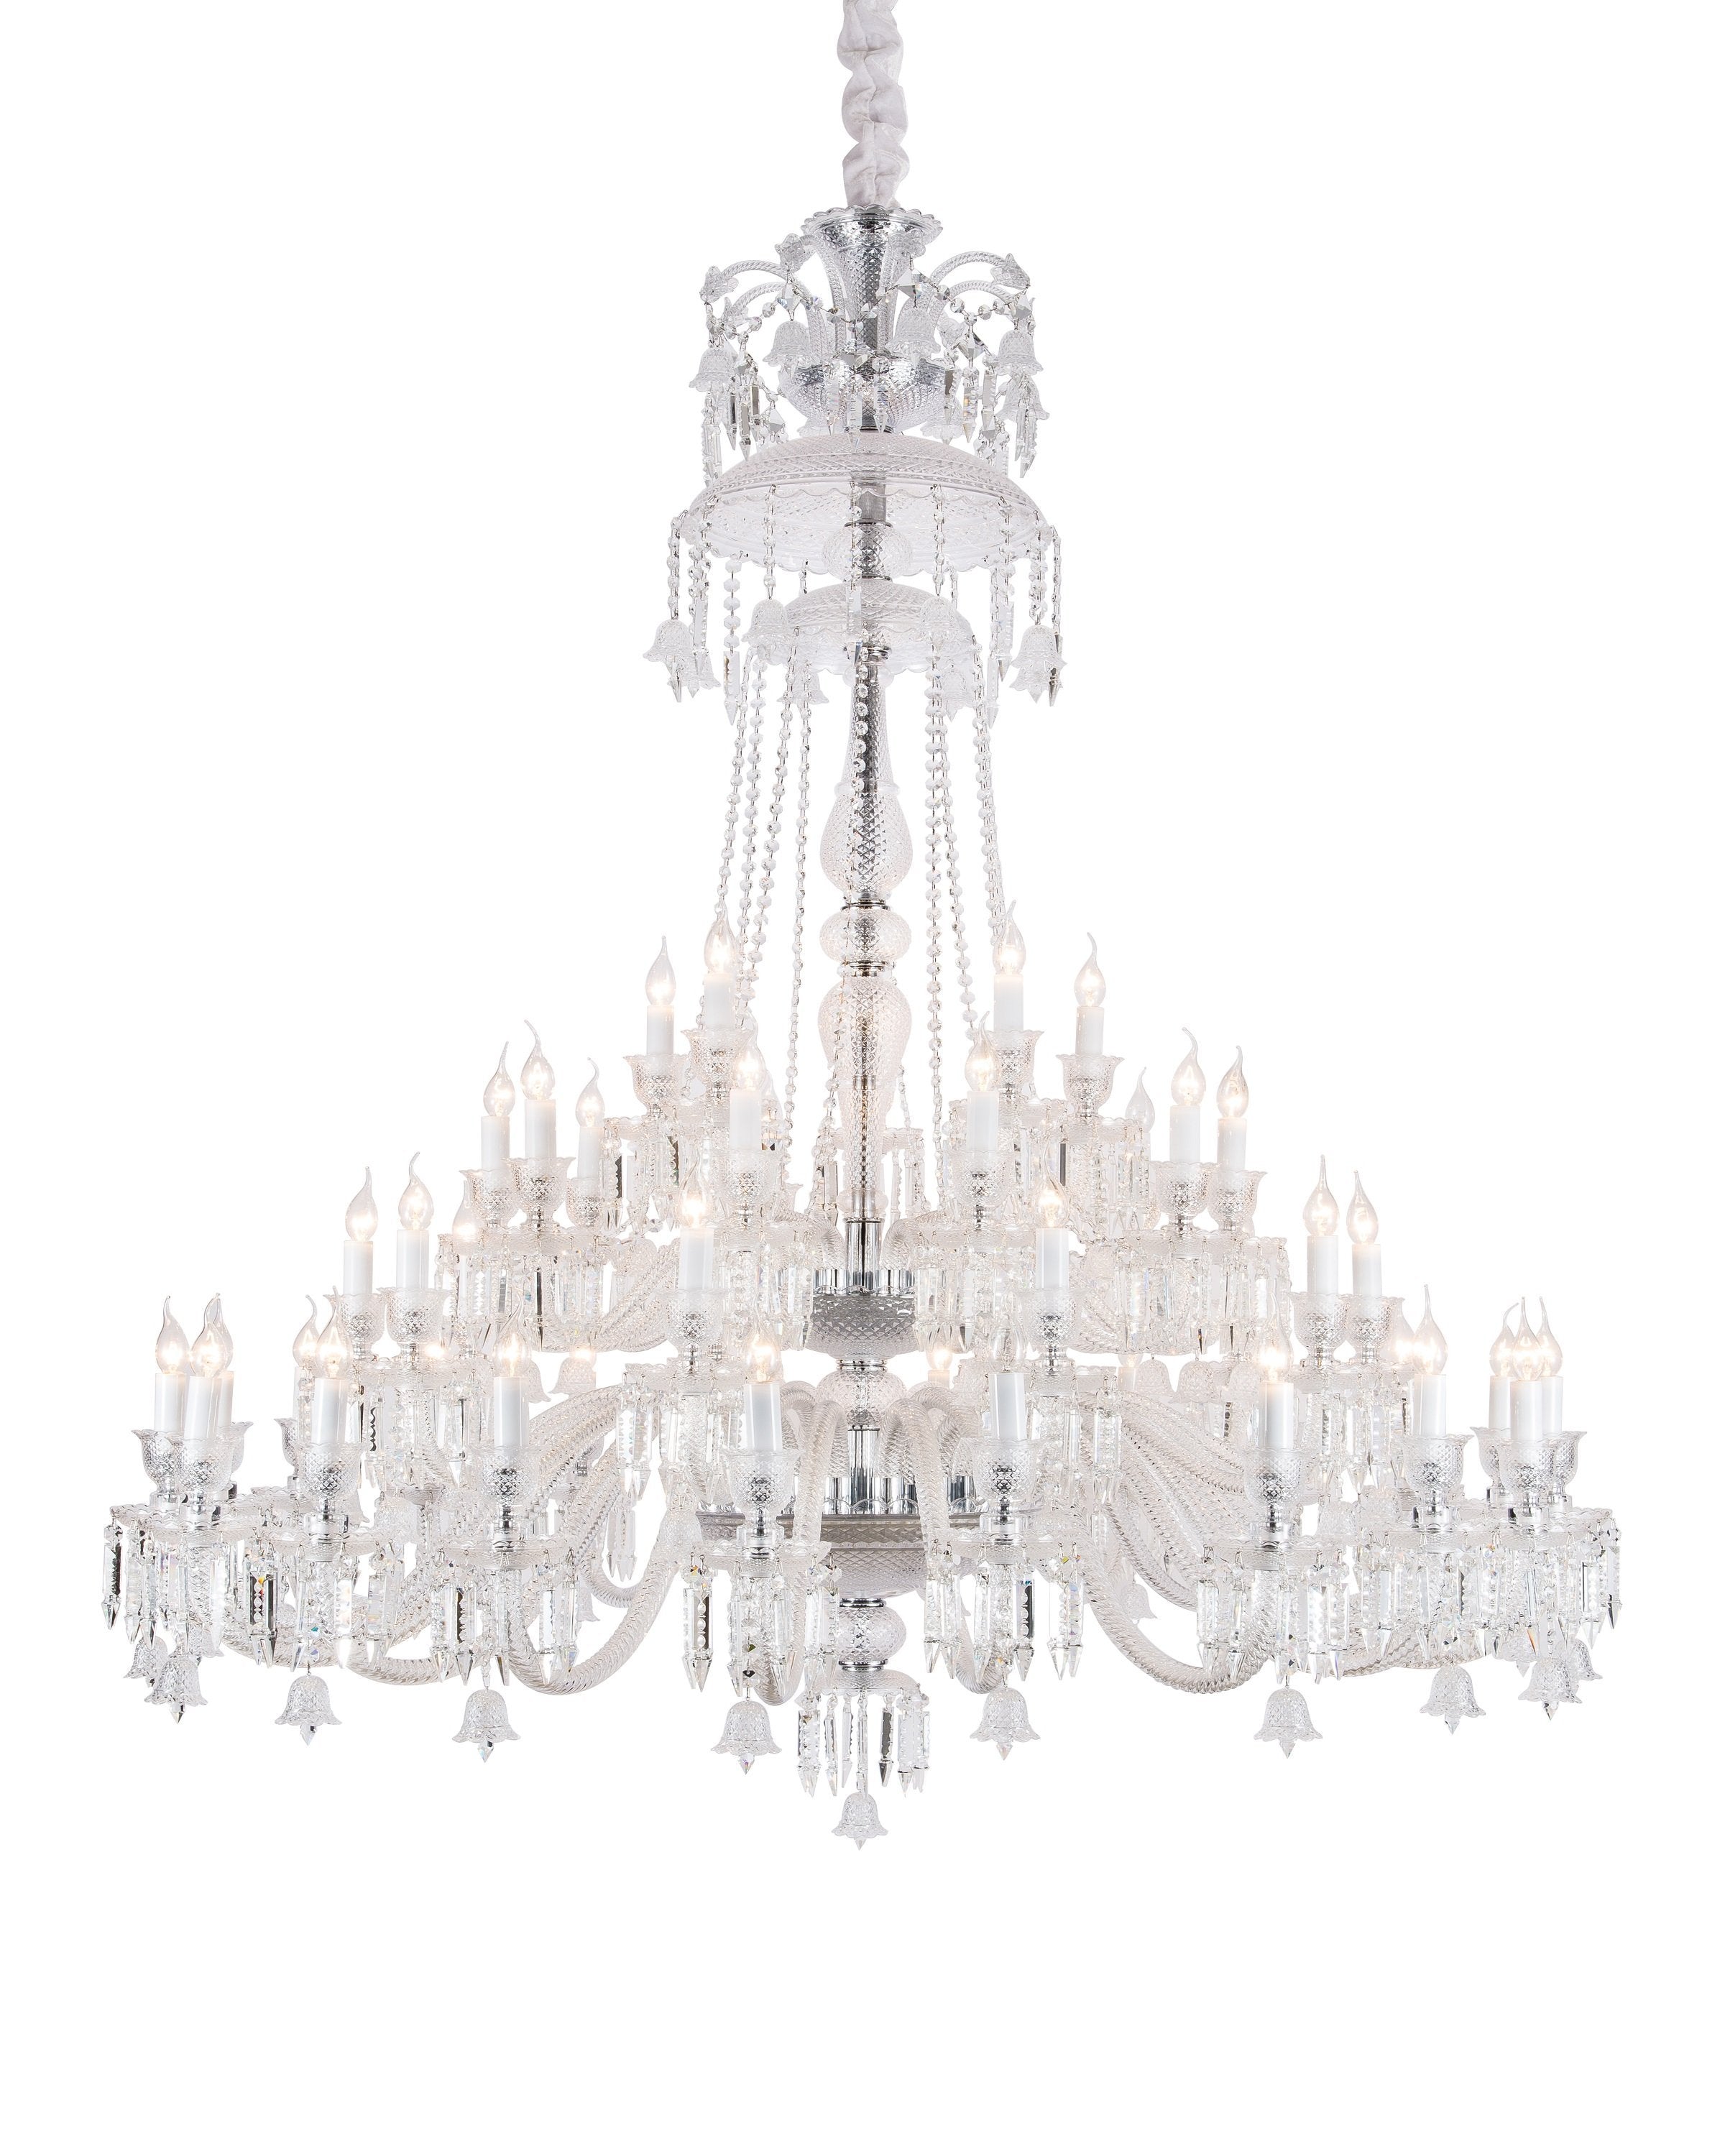 Luxury transparent chandelier